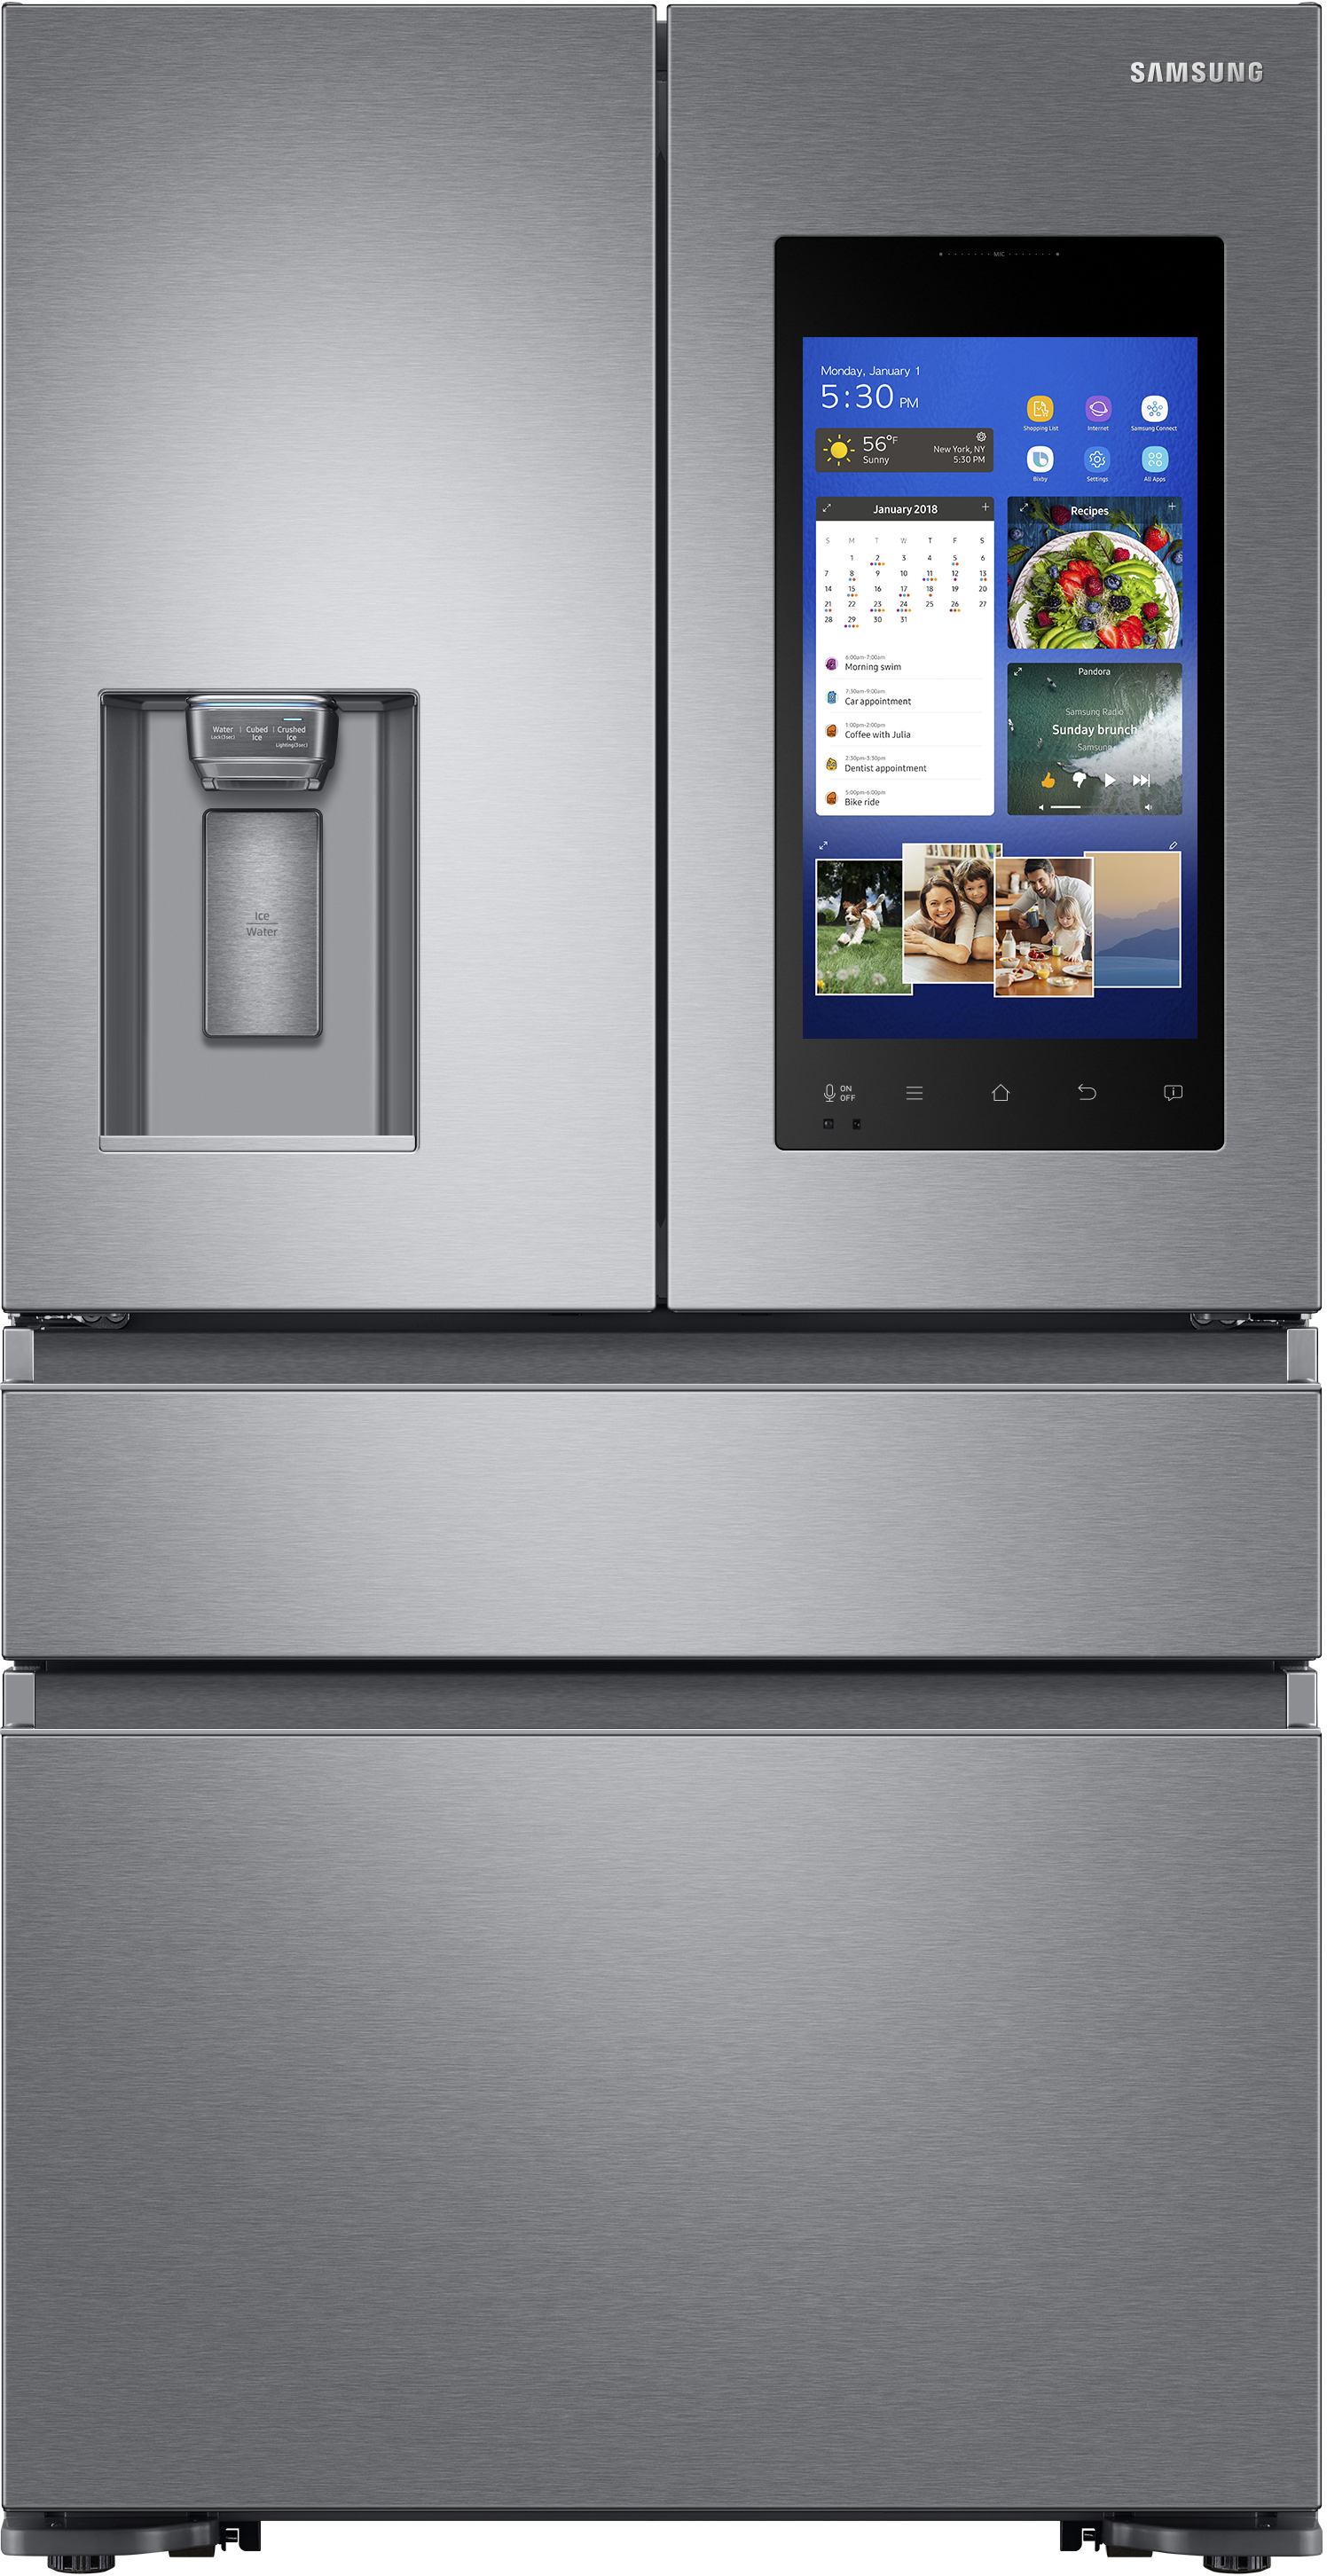 Samsung RF23M8570SR/AA 22.2 Cu. Ft. 4-Door French Door Refrigerator